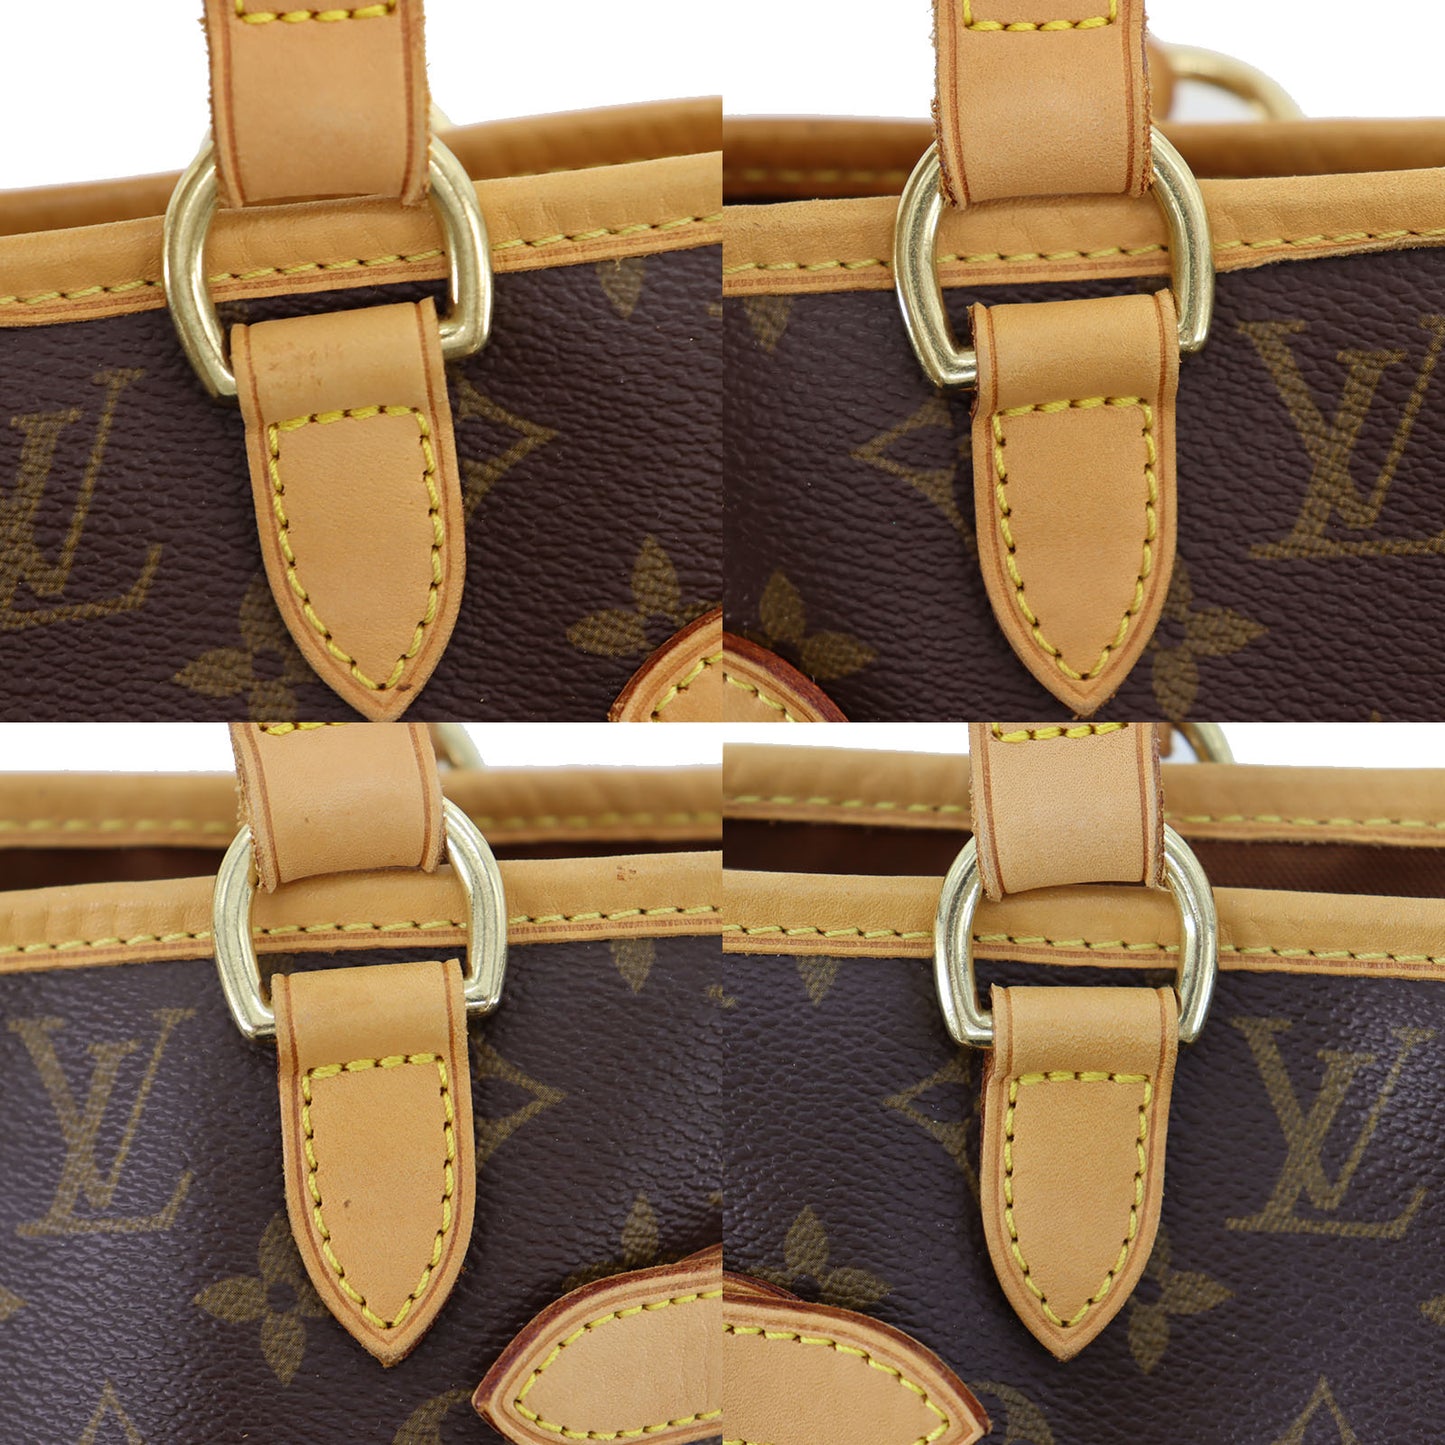 Auth Louis Vuitton Monogram M51153 Tote Bag Monogram